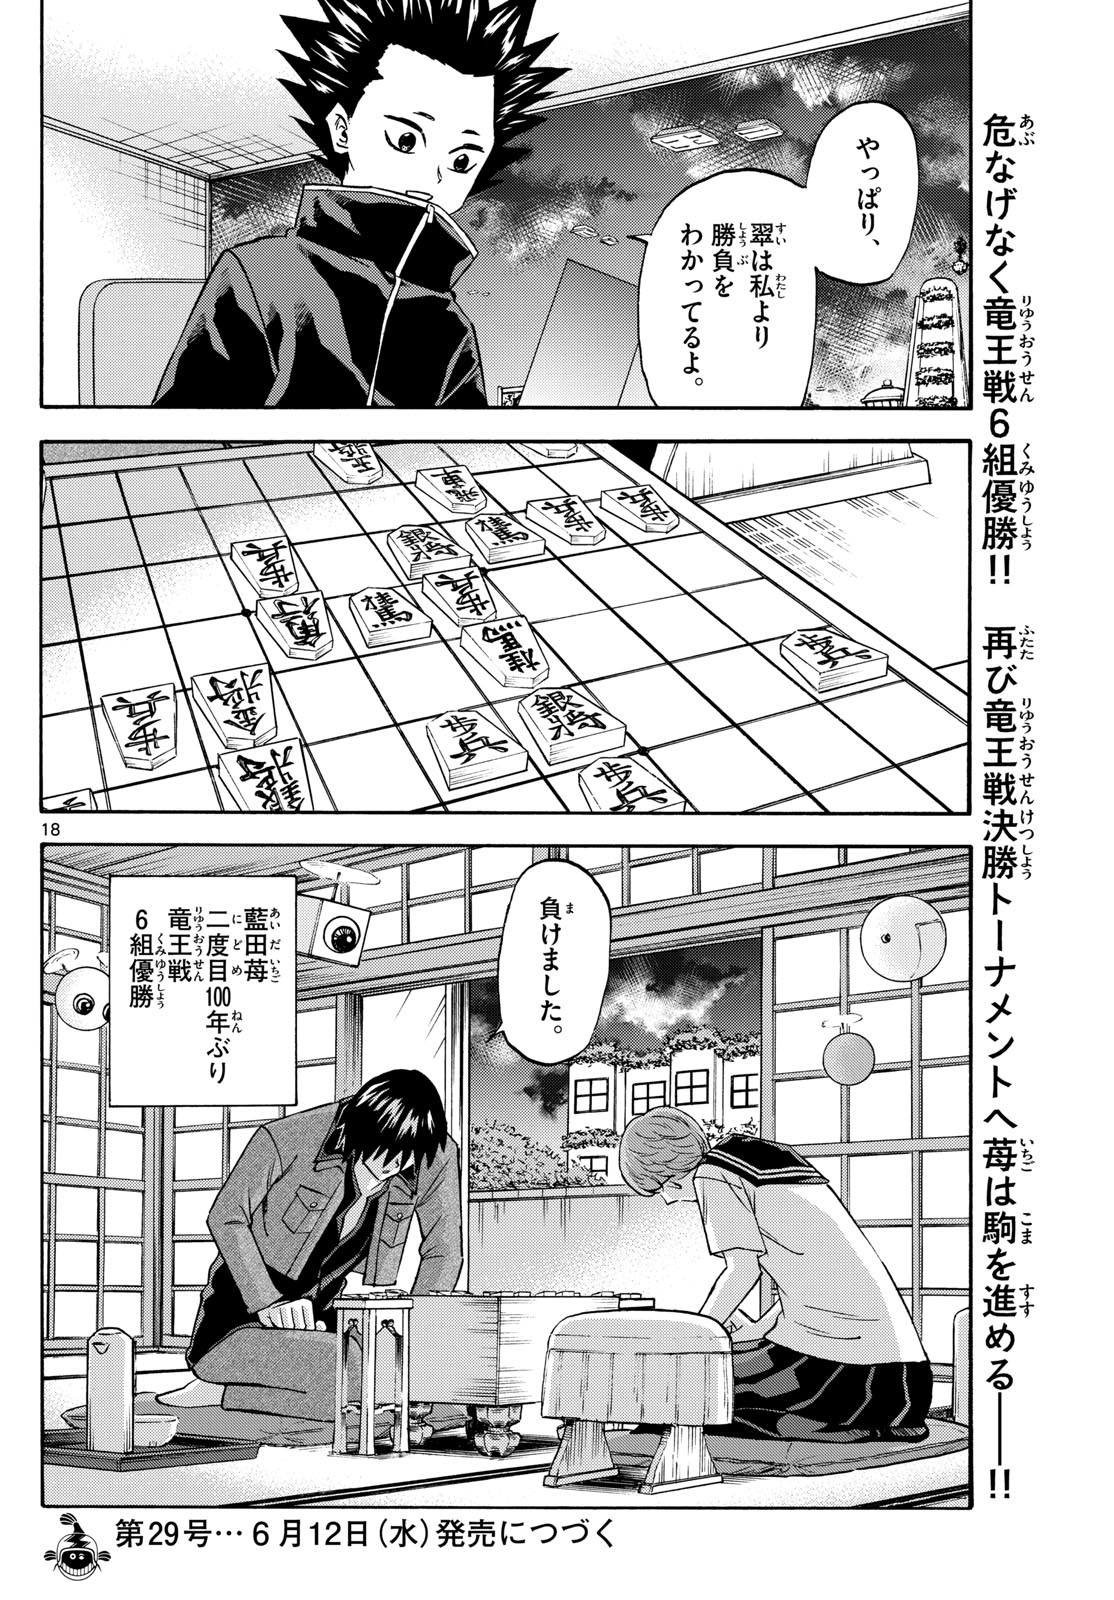 Ryu-to-Ichigo - Chapter 194 - Page 18